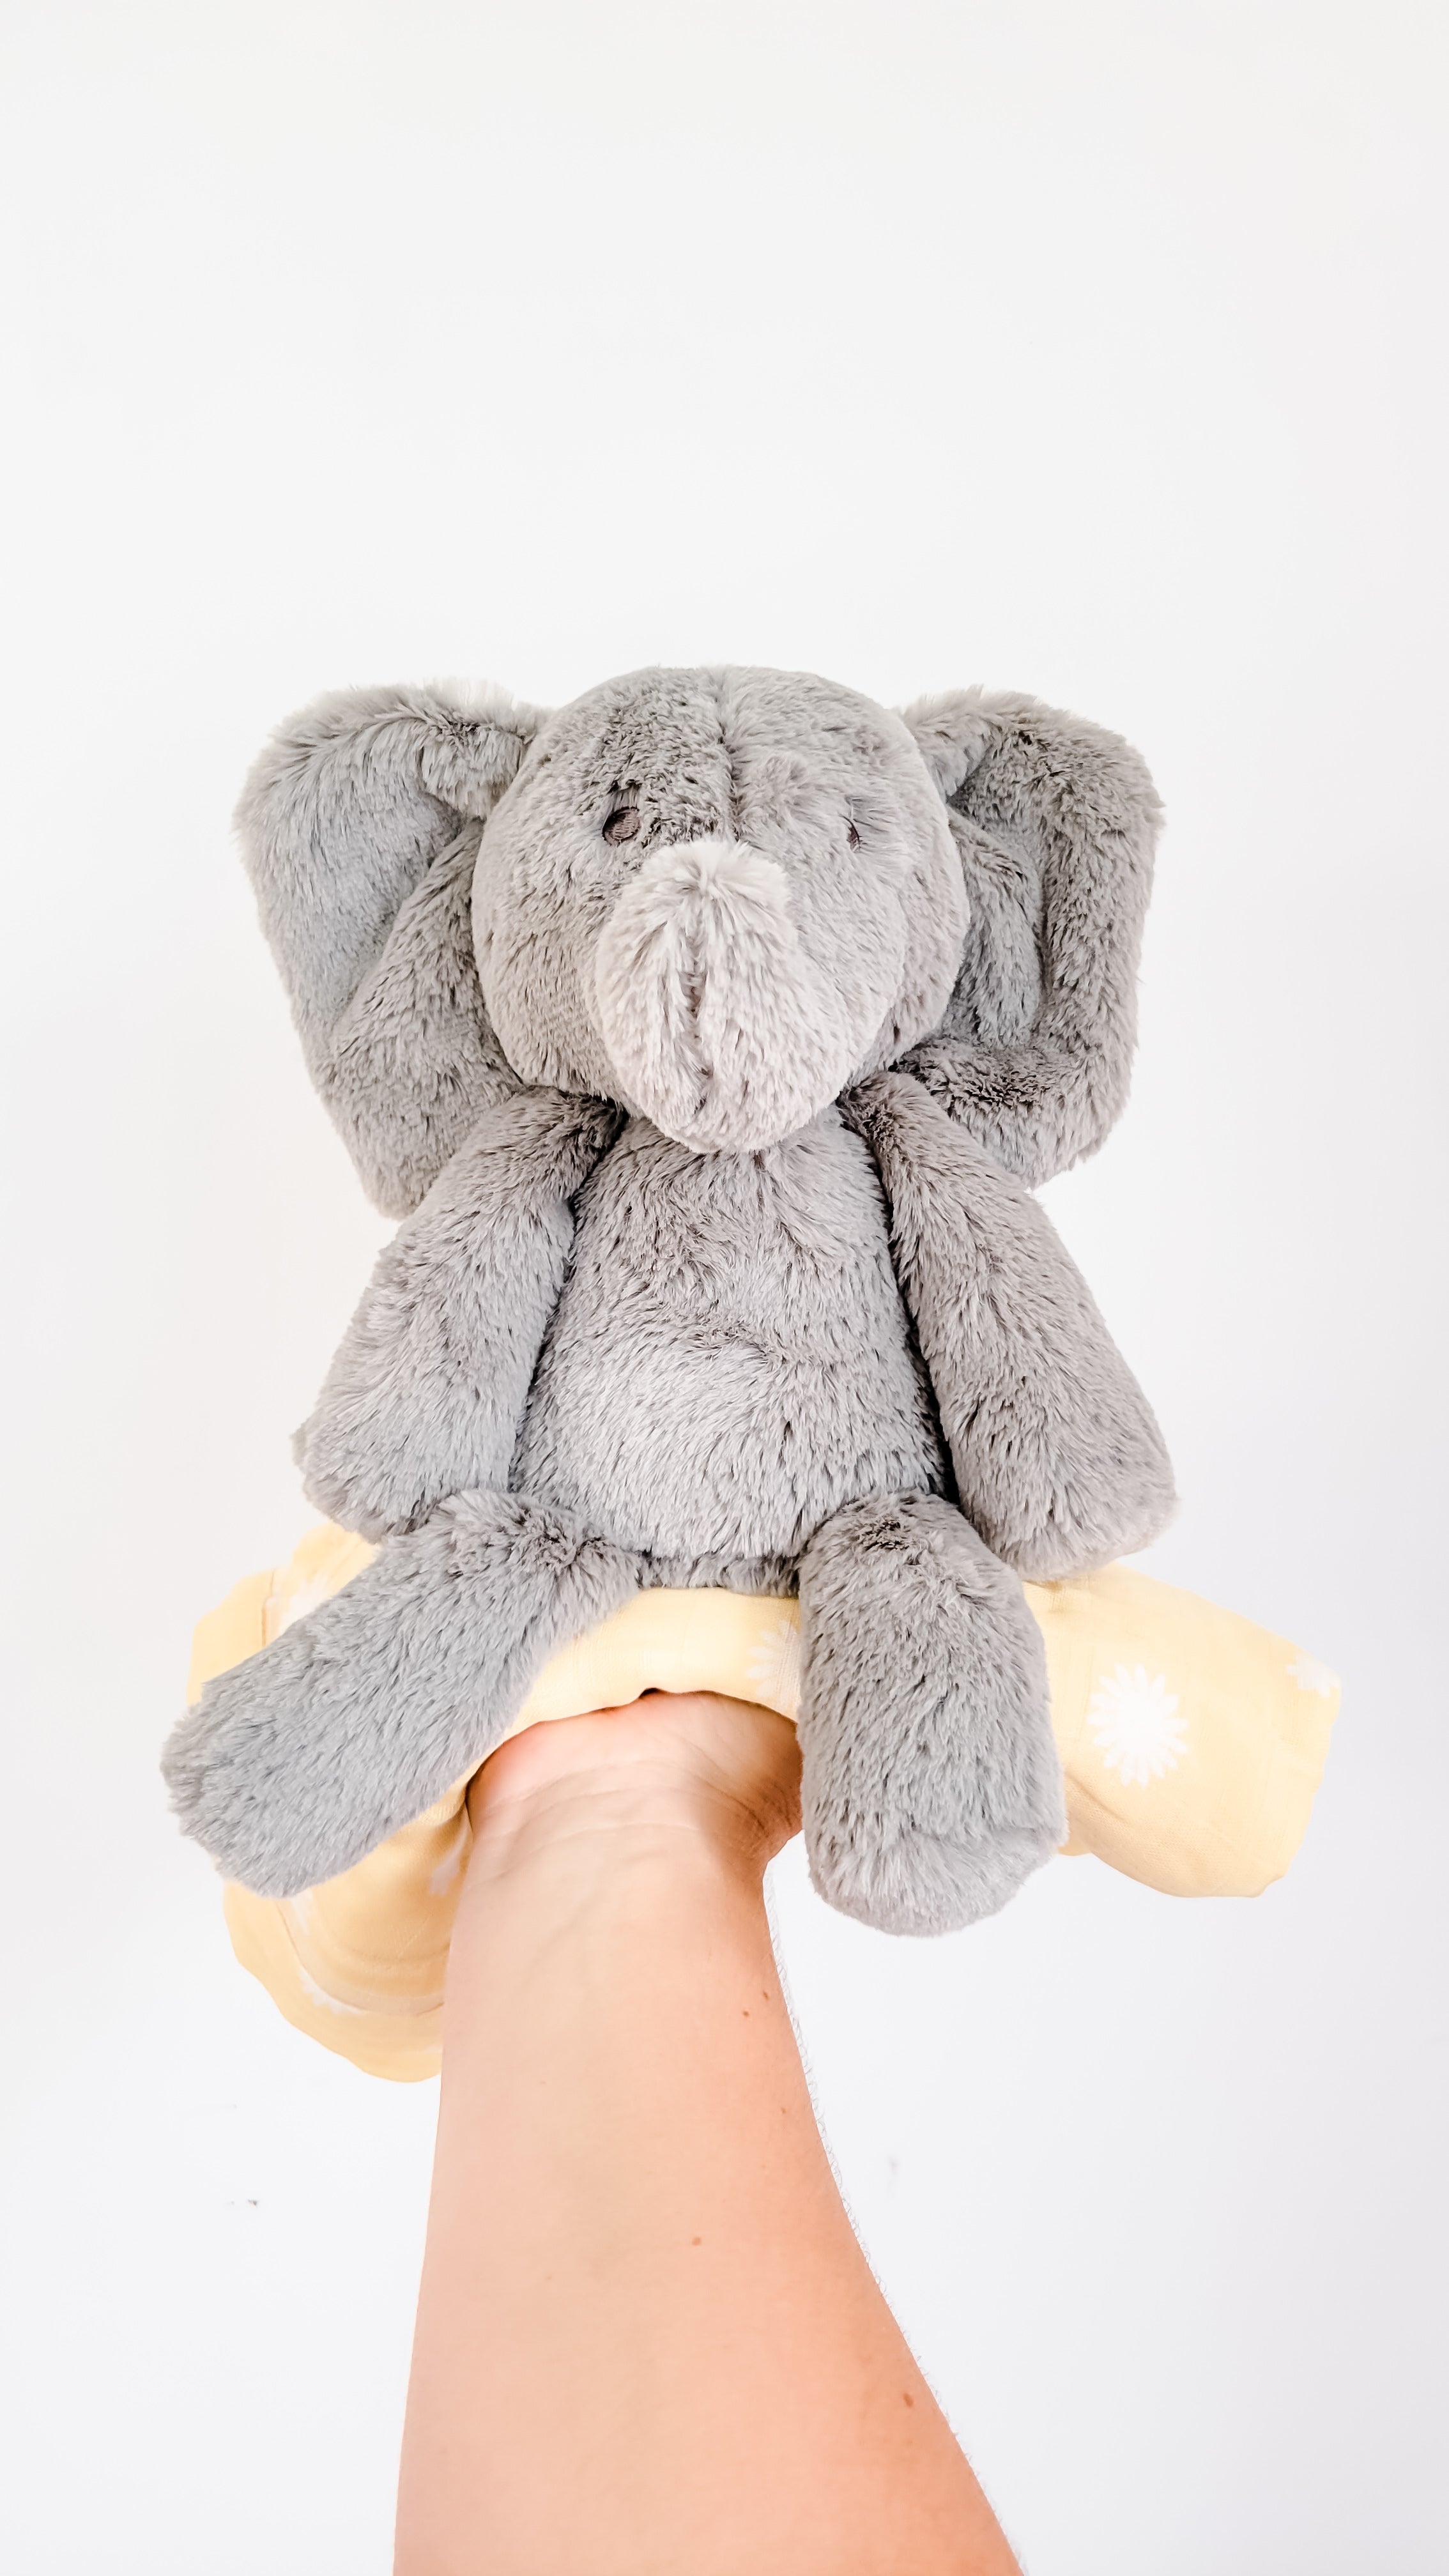 OB Designs Elly Elephant Soft Toy